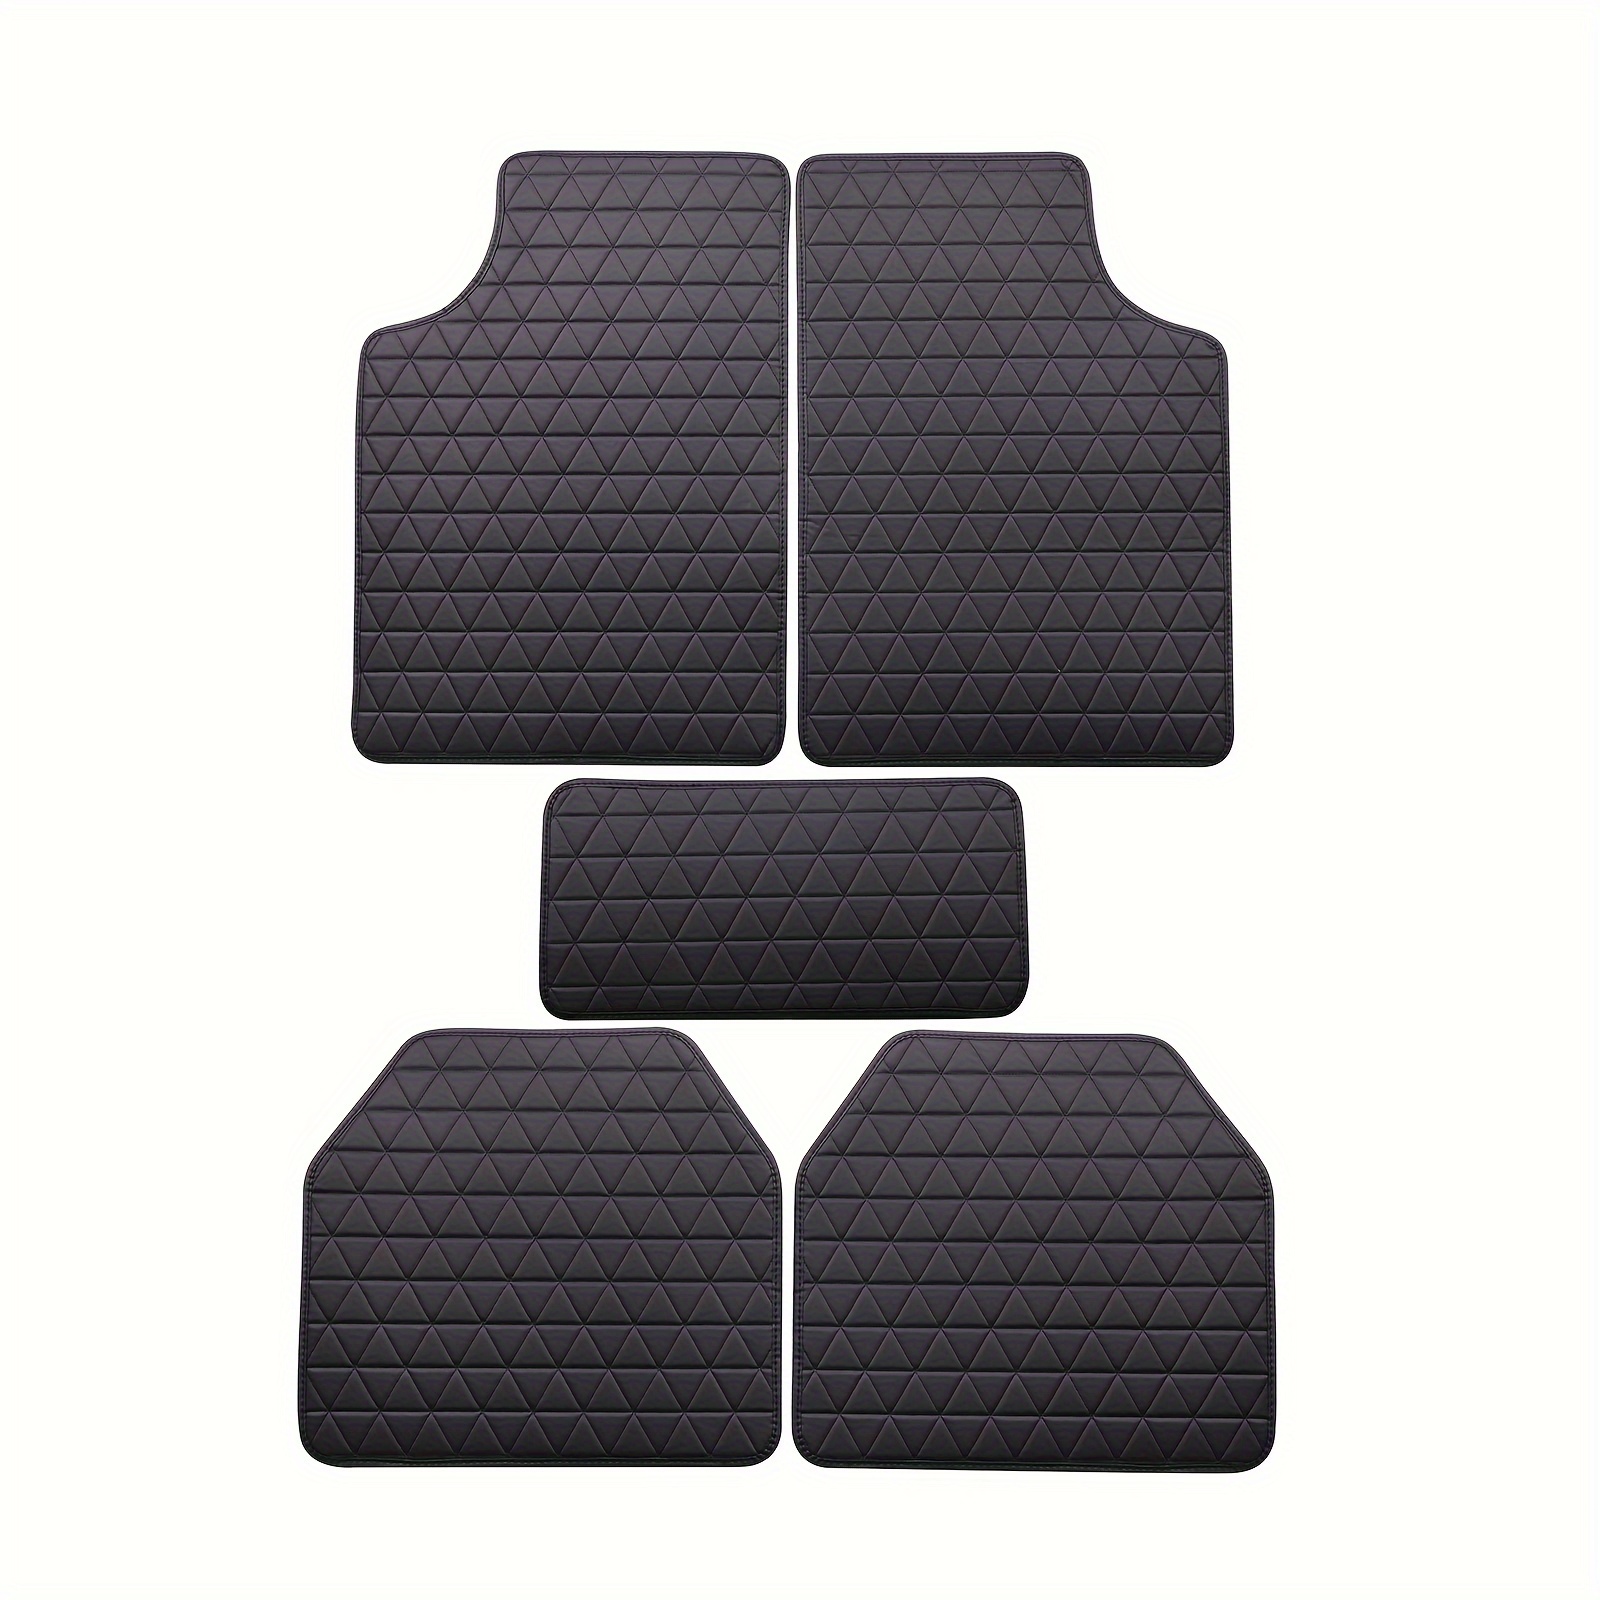 maiqiken Auto Fußmatten passend für Allwetter PU-Leder